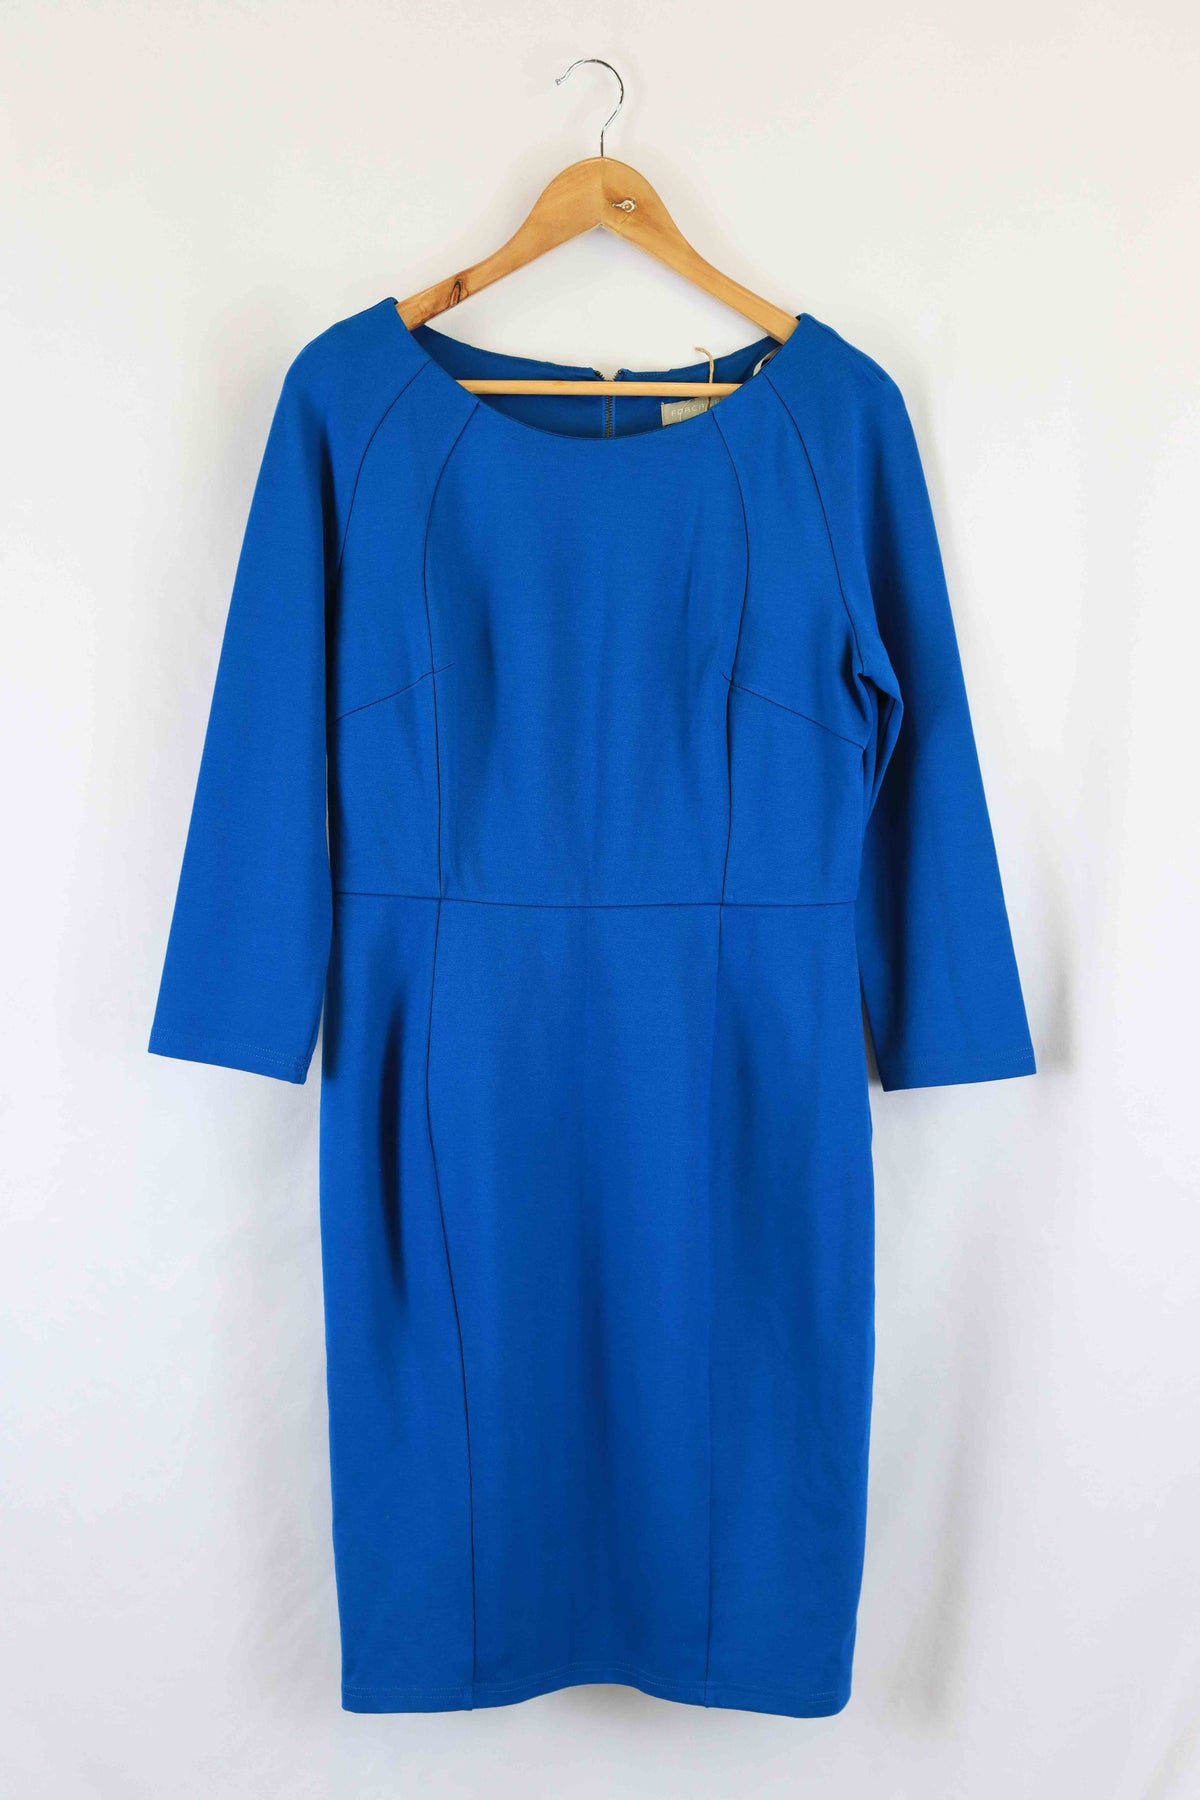 Forecast Blue Long Sleeve Bodycon Dress 14